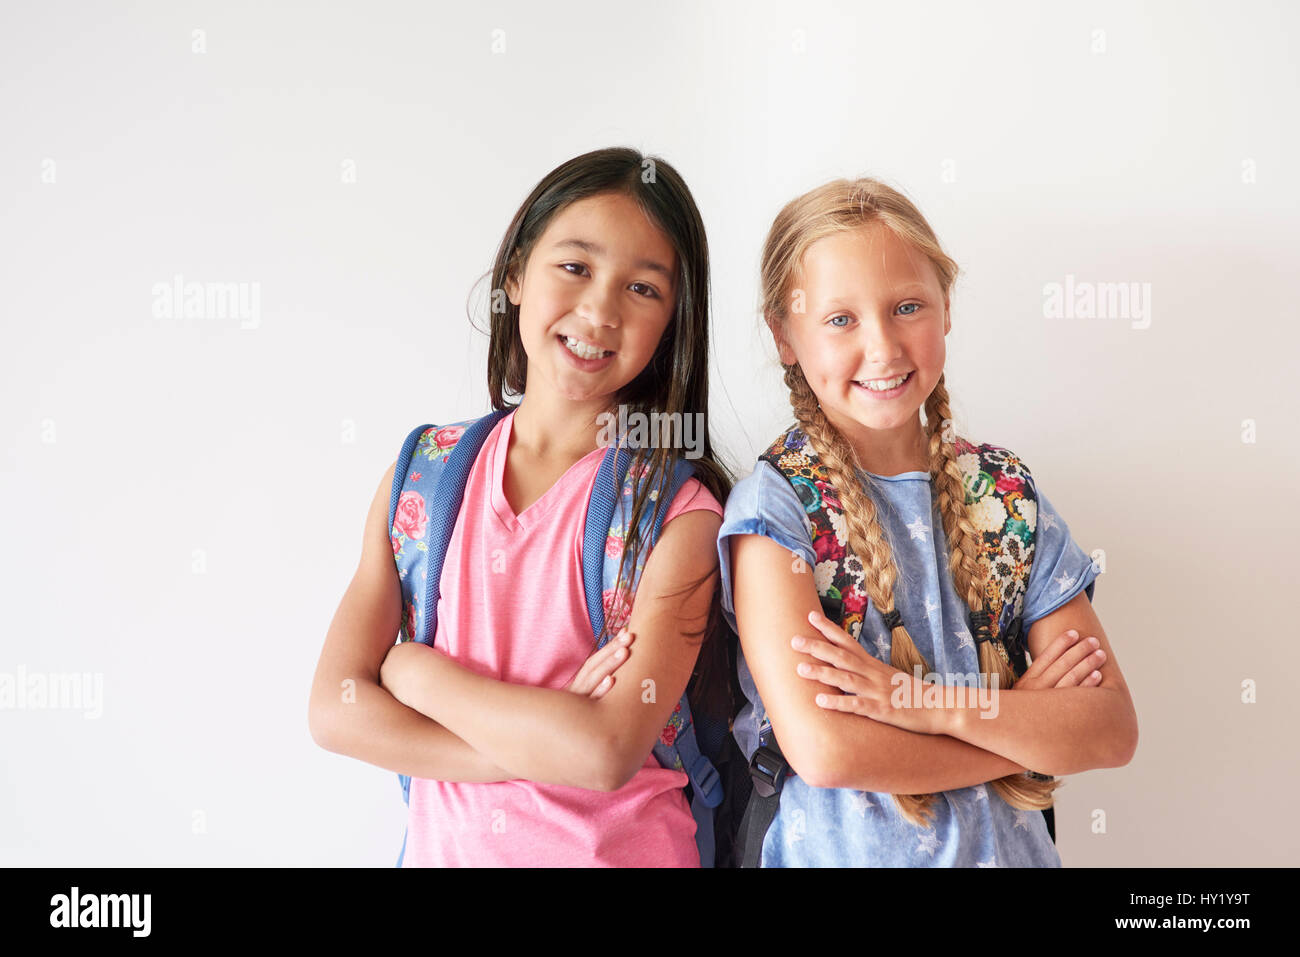 Retrato de dos muchachas bonitas con mochilas Foto de stock